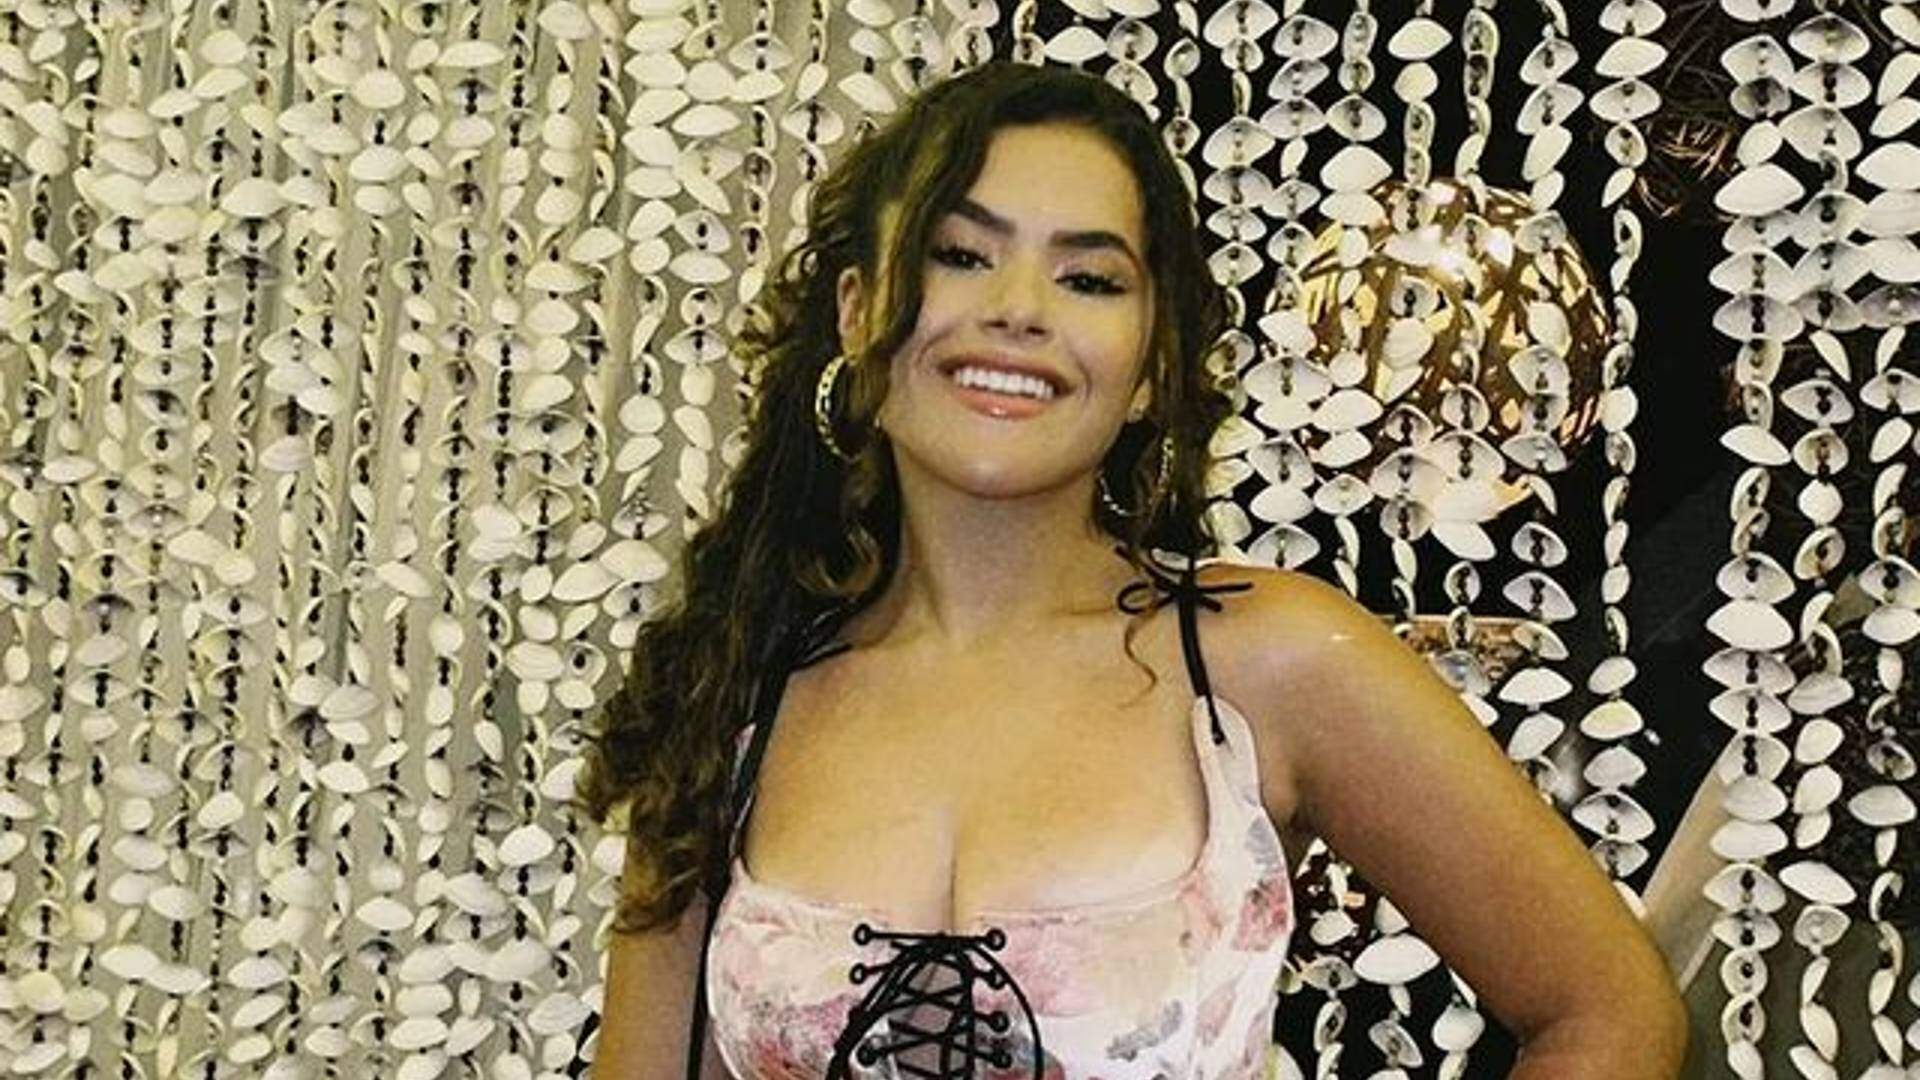 Vento levanta vestido de Maisa Silva e revela bronze íntimo e coxas torneadas: “Que volume, hein” - Metropolitana FM